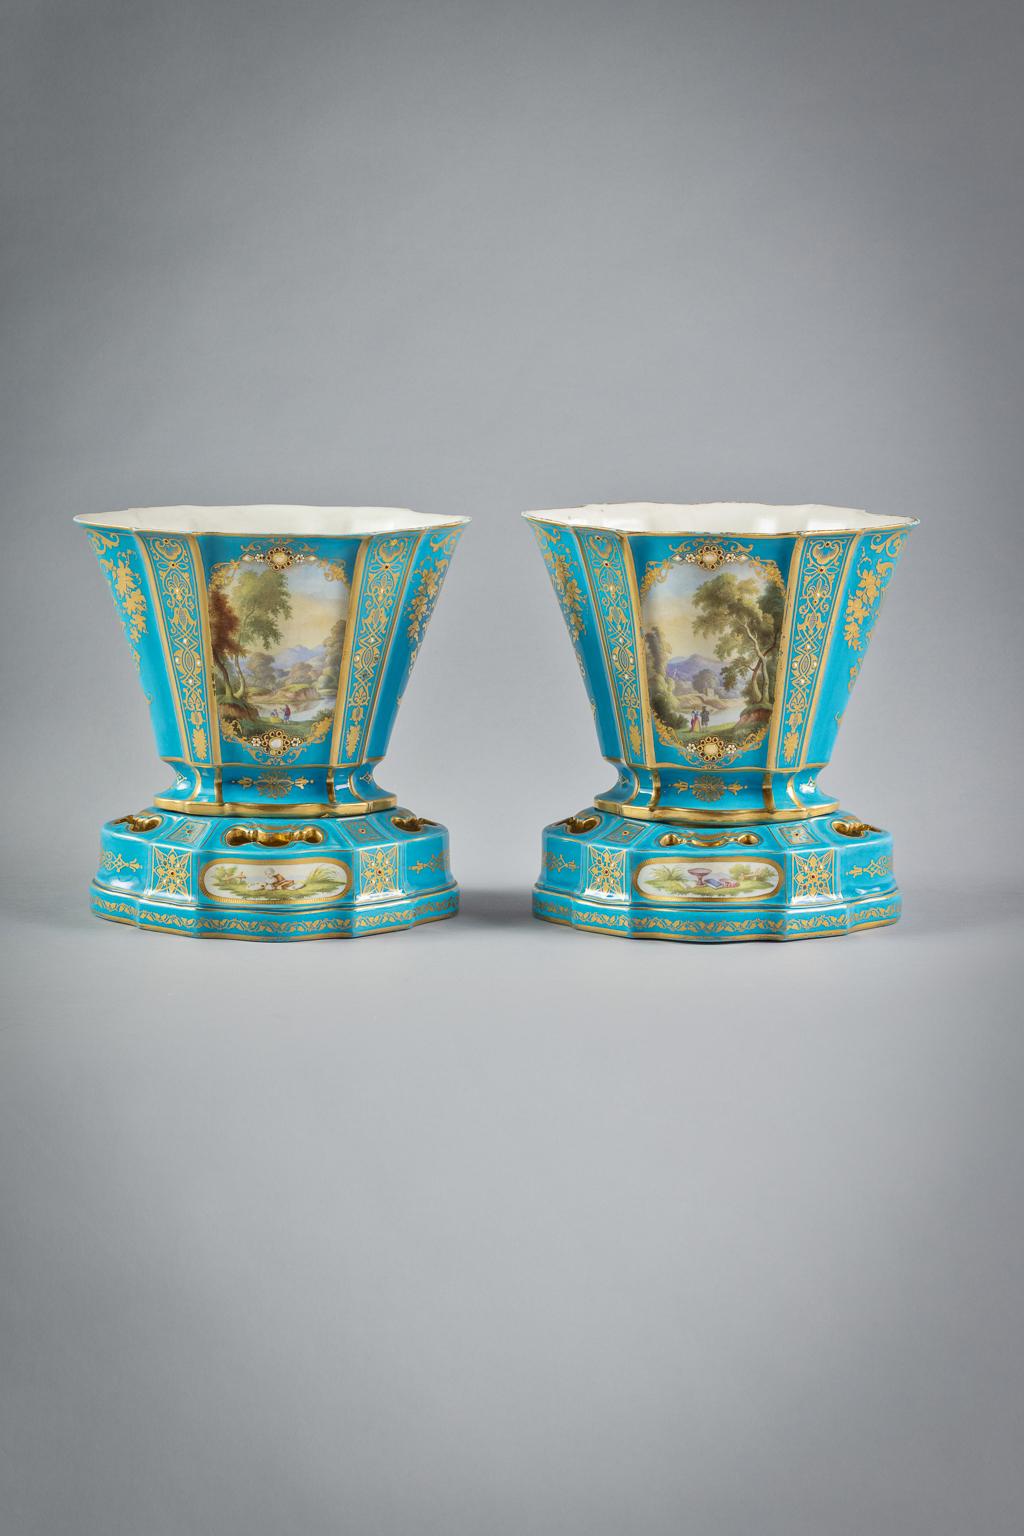 Vase Hollandais, Sevres-Stil mit Sevres-Marke und L-Schriftzug darunter. Die Farbreserven sind auf beiden Seiten mit mythologischen und zeitgenössischen Szenen in vergoldeten und juwelenbesetzten Kartuschen bemalt, die anderen Tafeln mit vergoldeten